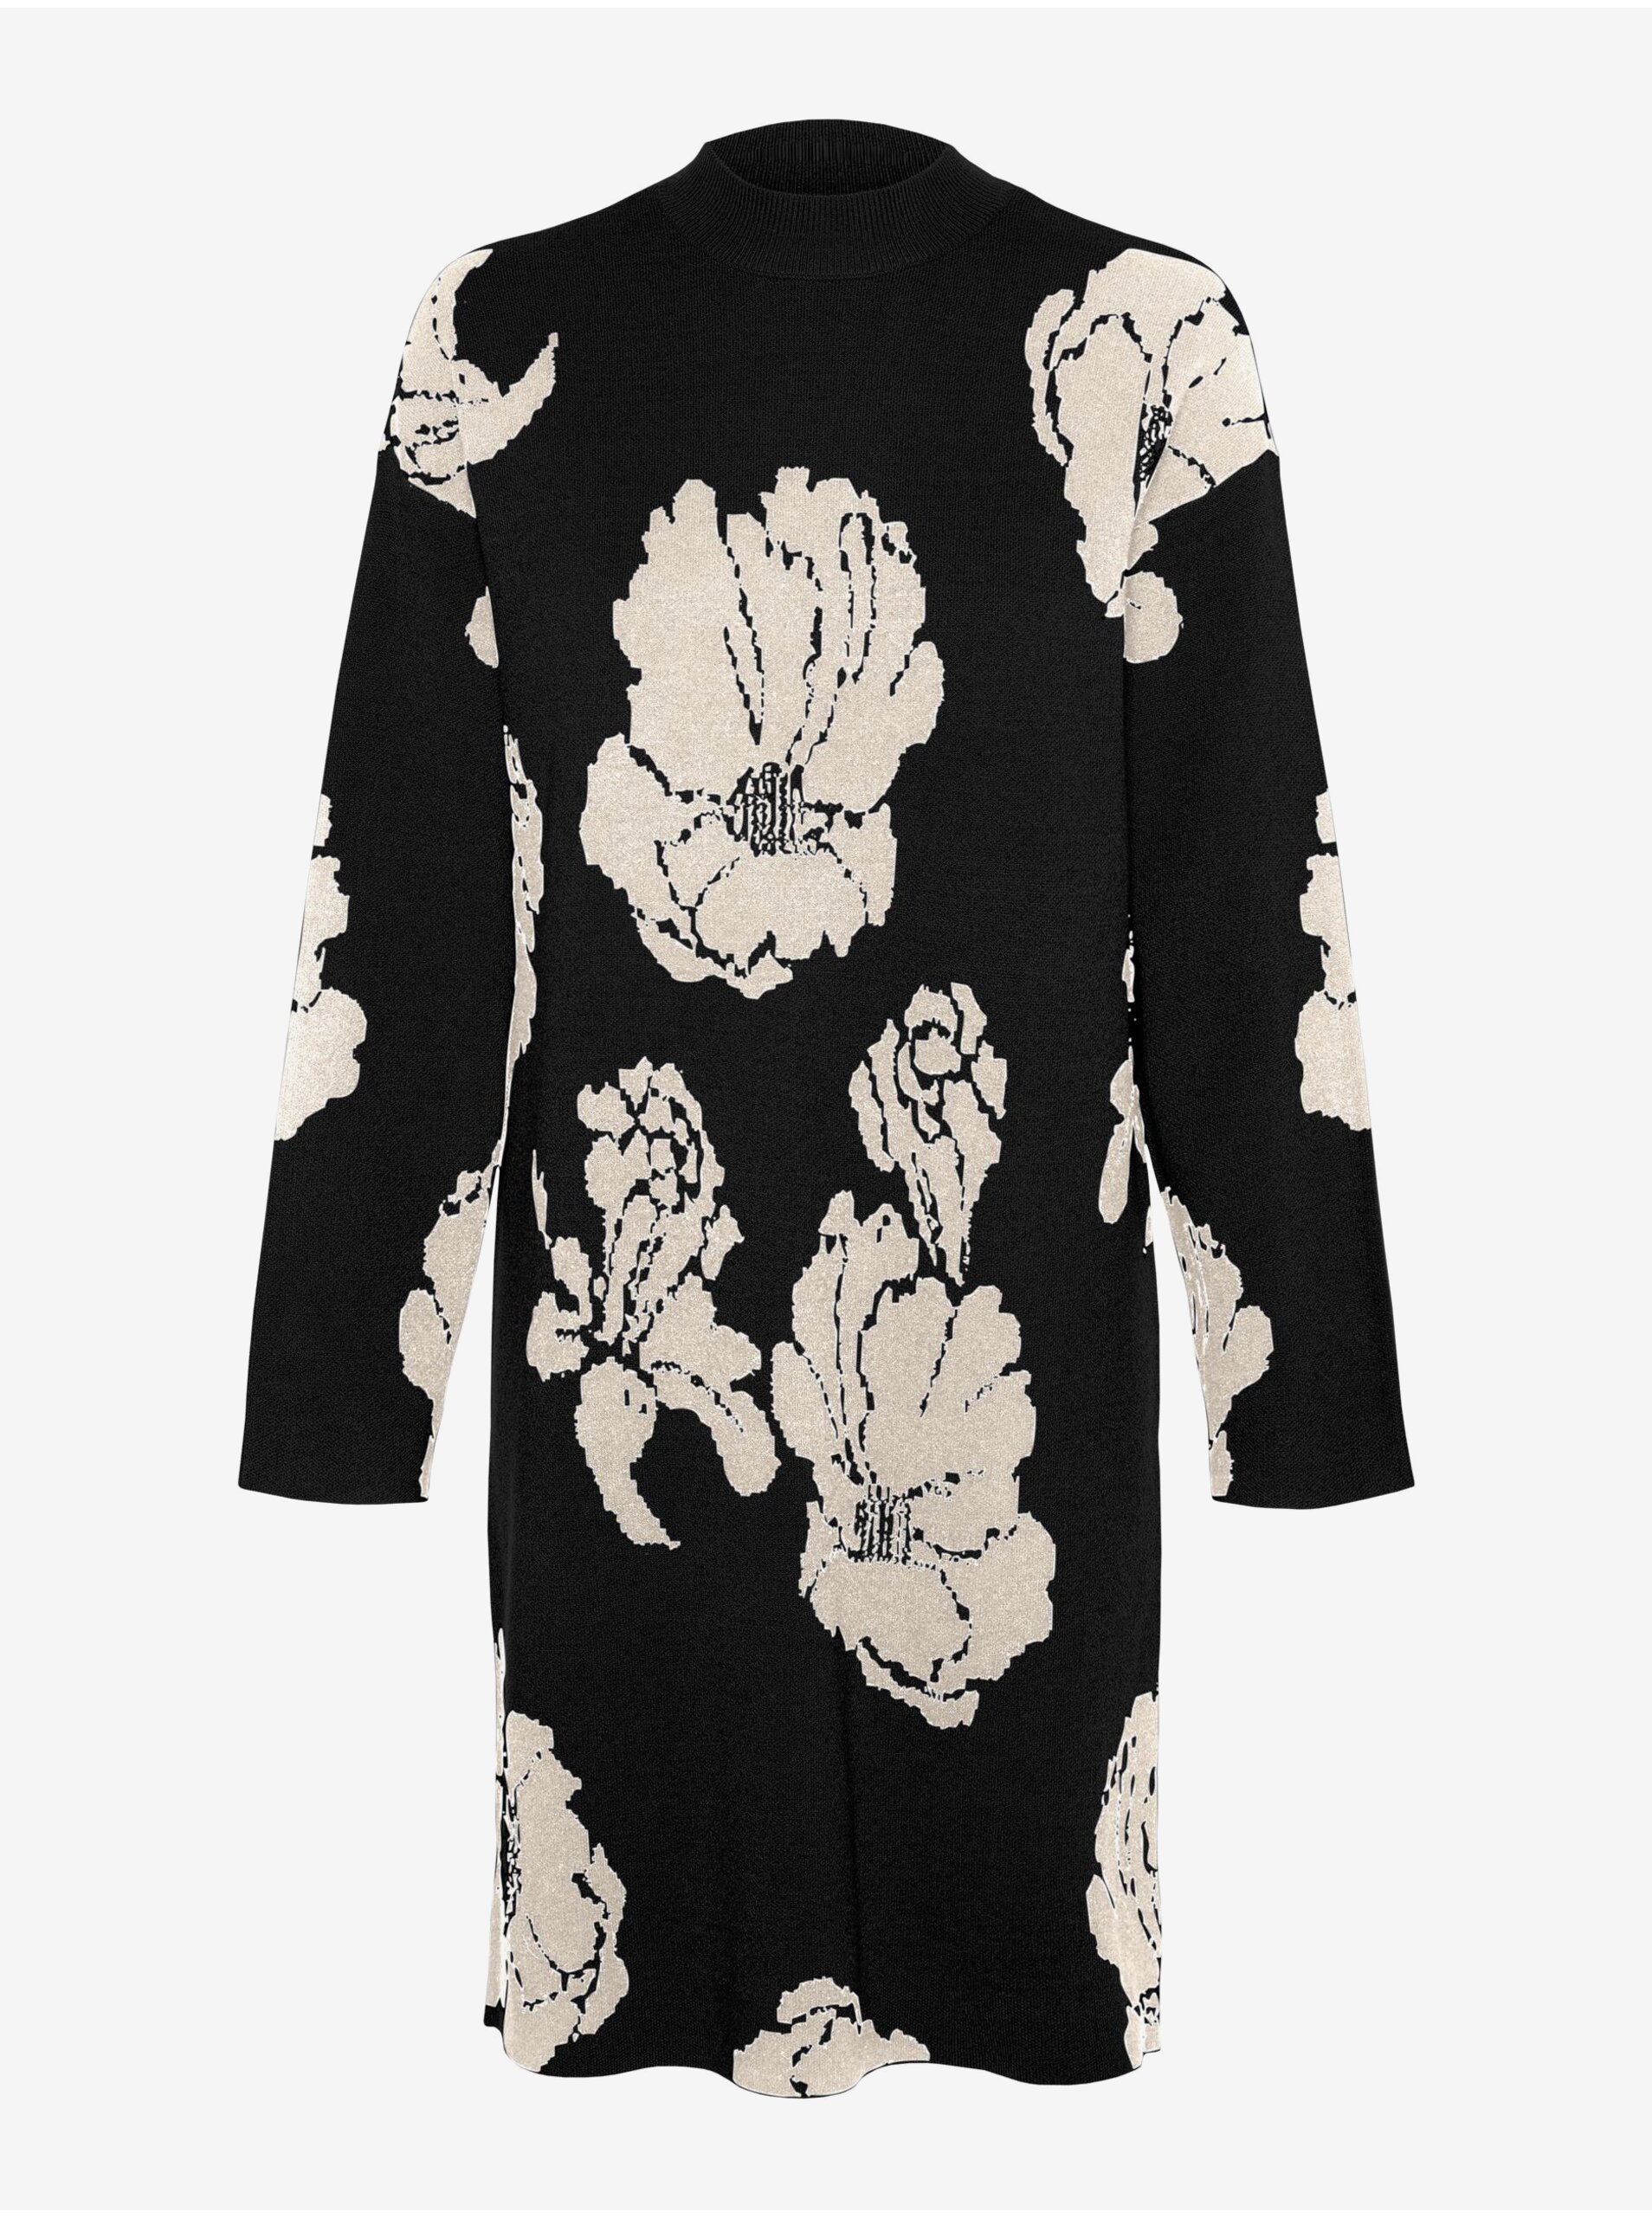 Bílo-černé dámské květované svetrové šaty VERO MODA Flora - Dámské